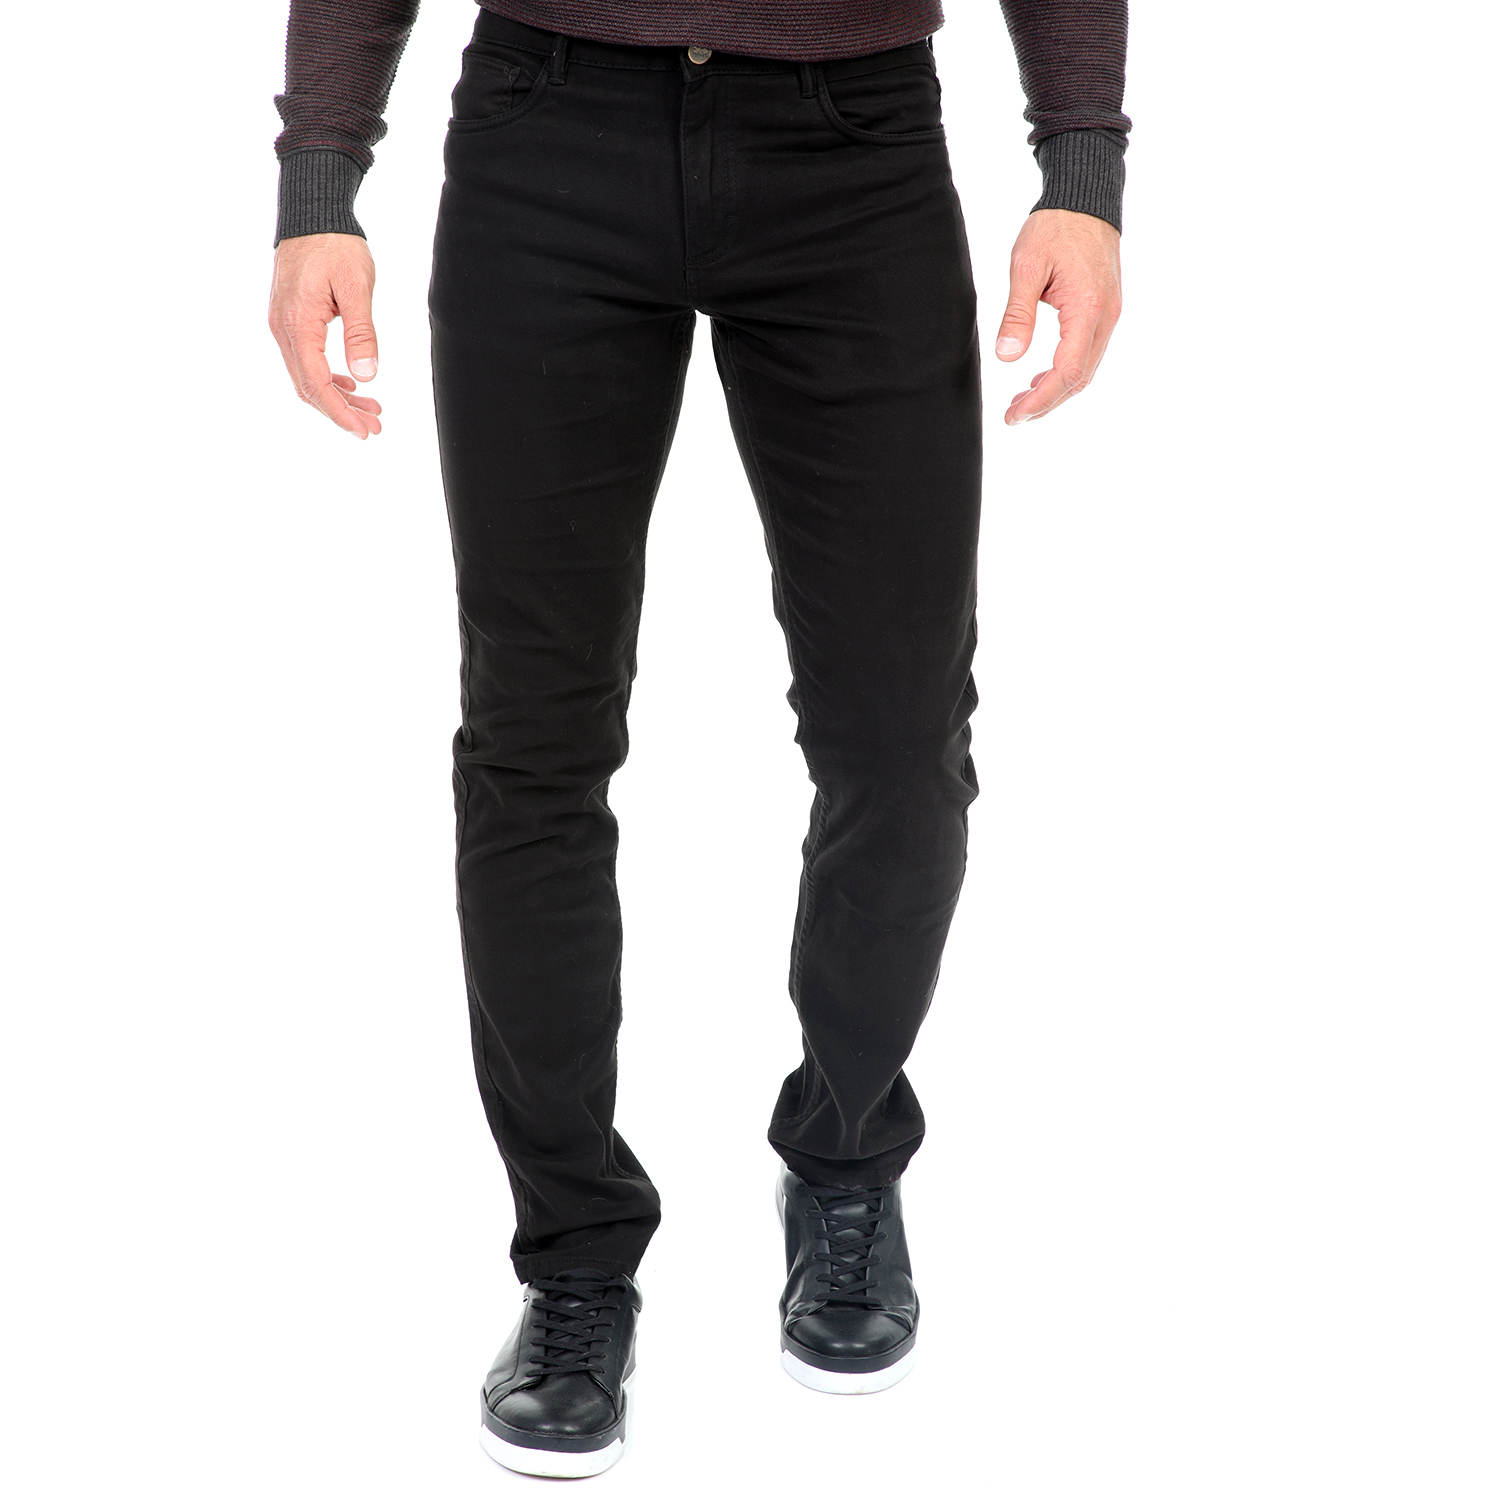 Ανδρικά/Ρούχα/Παντελόνια/Ισια Γραμμή GREENWOOD - Ανδρικό υφασμάτινο παντελόνι GREENWOOD μαύρο